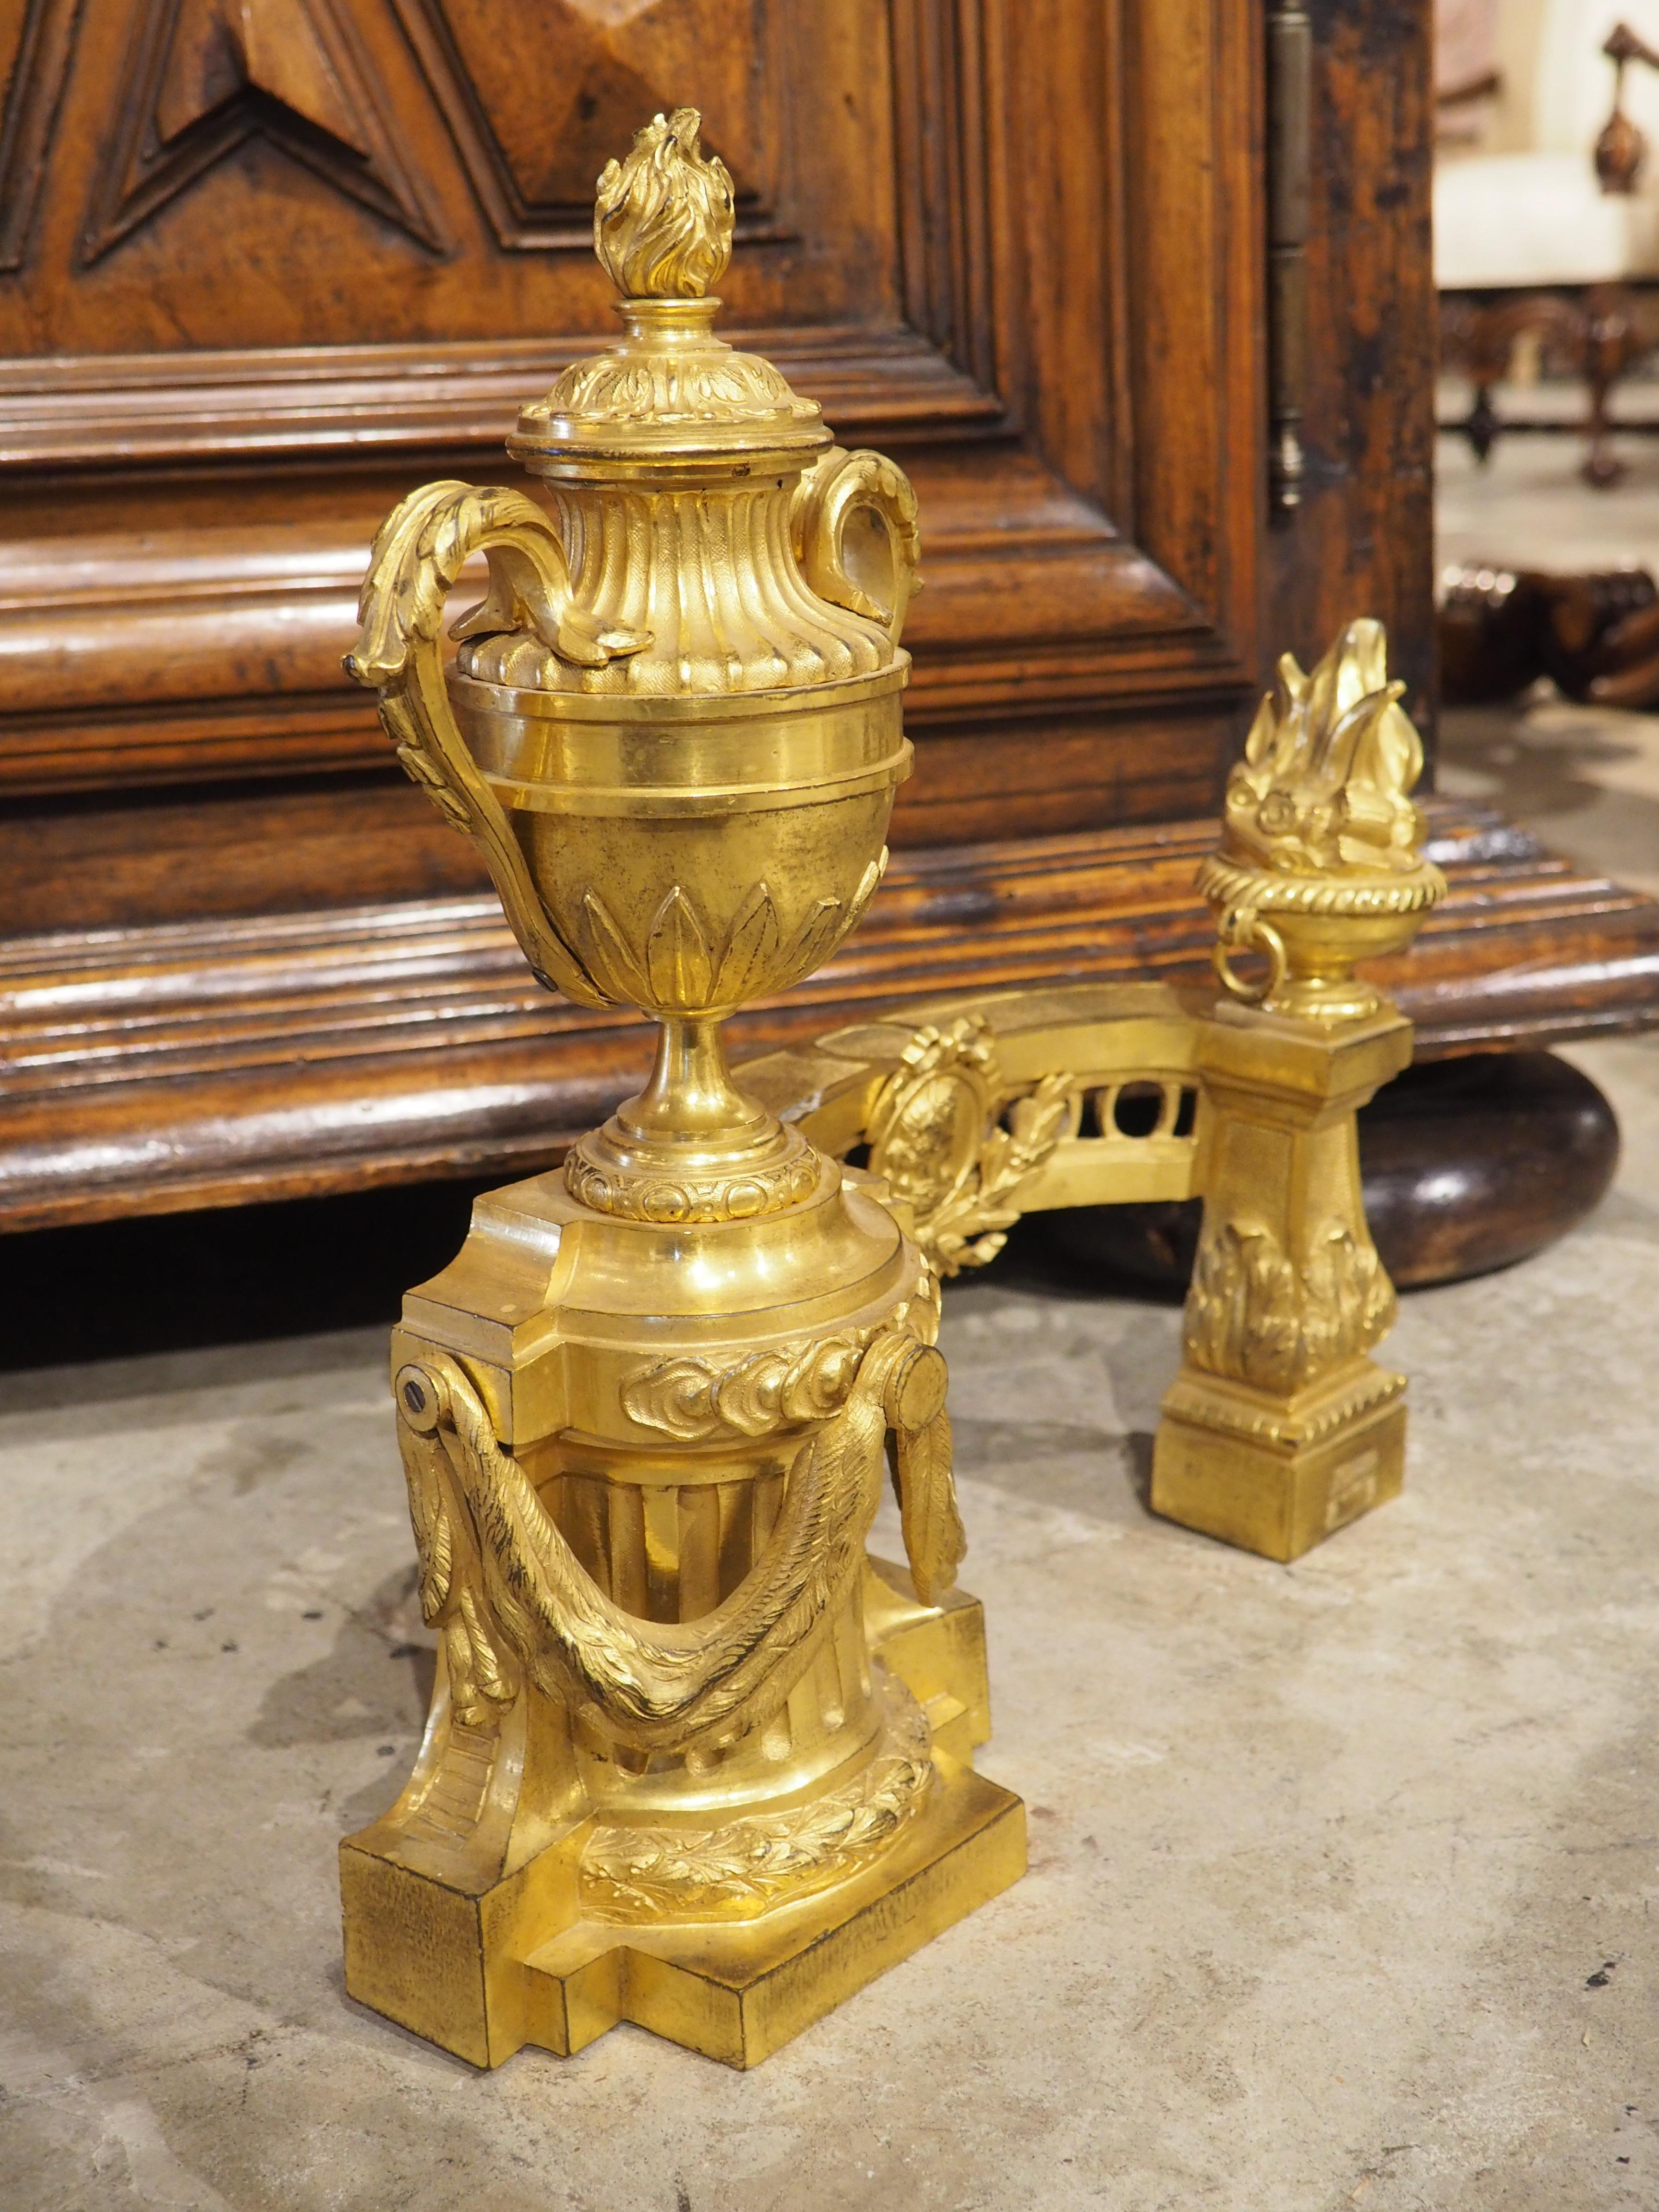 Provenant de France, vers 1850, cette paire de chenets de cheminée en bronze doré est de style Louis XVI, comme en témoigne la présence de multiples pots a feu. Les Chenets sont utilisés depuis des siècles pour empêcher les bûches de se répandre